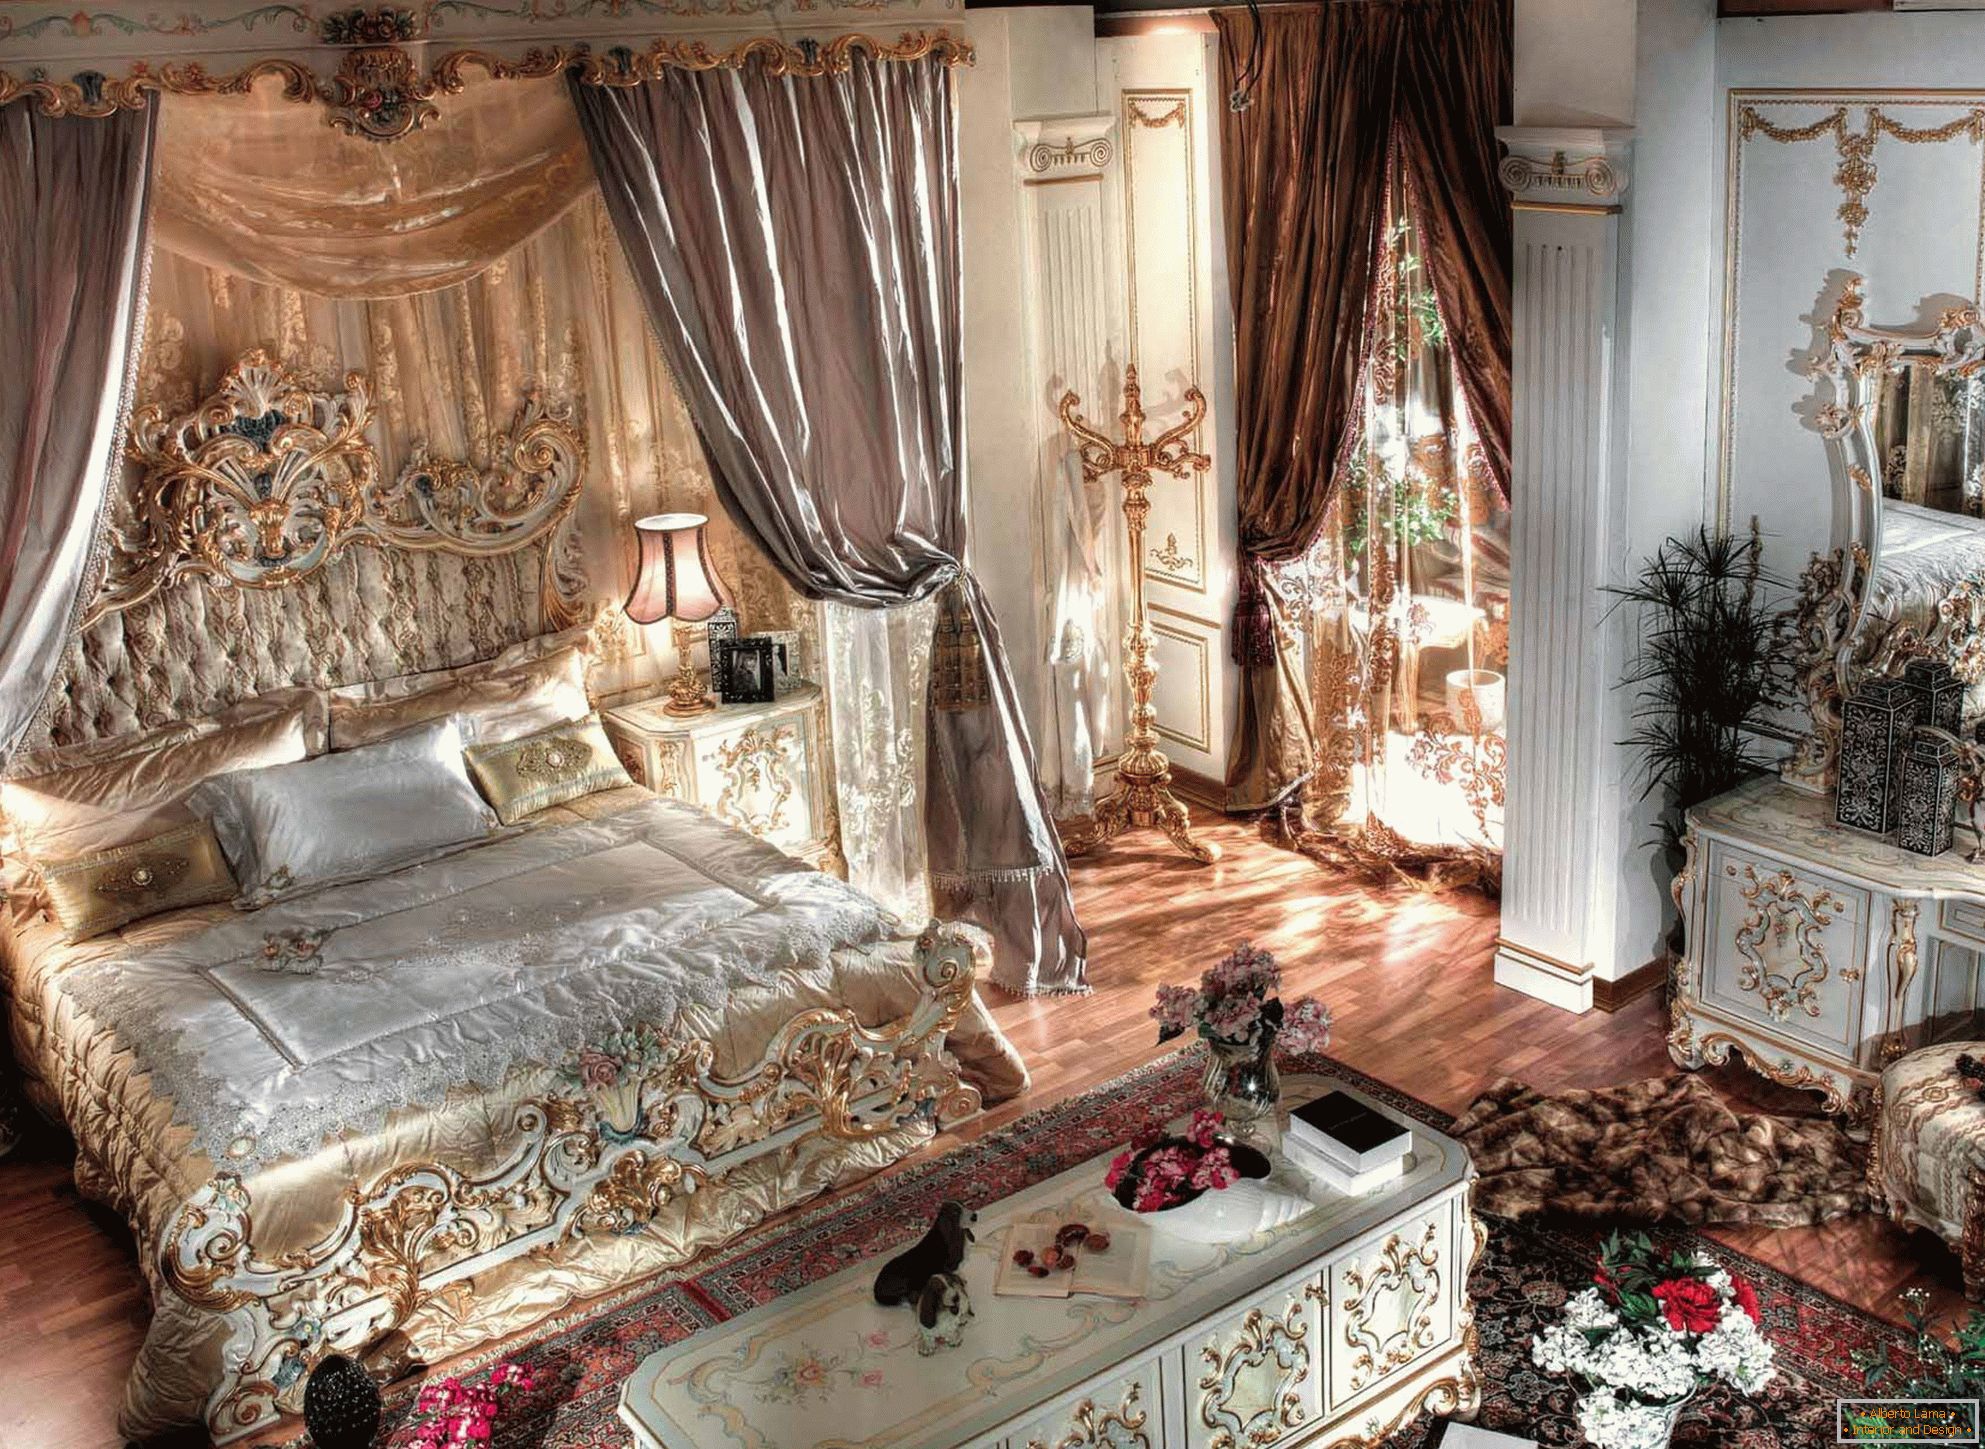 Раскошная спальня ў стылі барока з высокімі столямі. У цэнтра кампазіцыі масіўная ложак з дрэва з разьбянымі спінкамі.